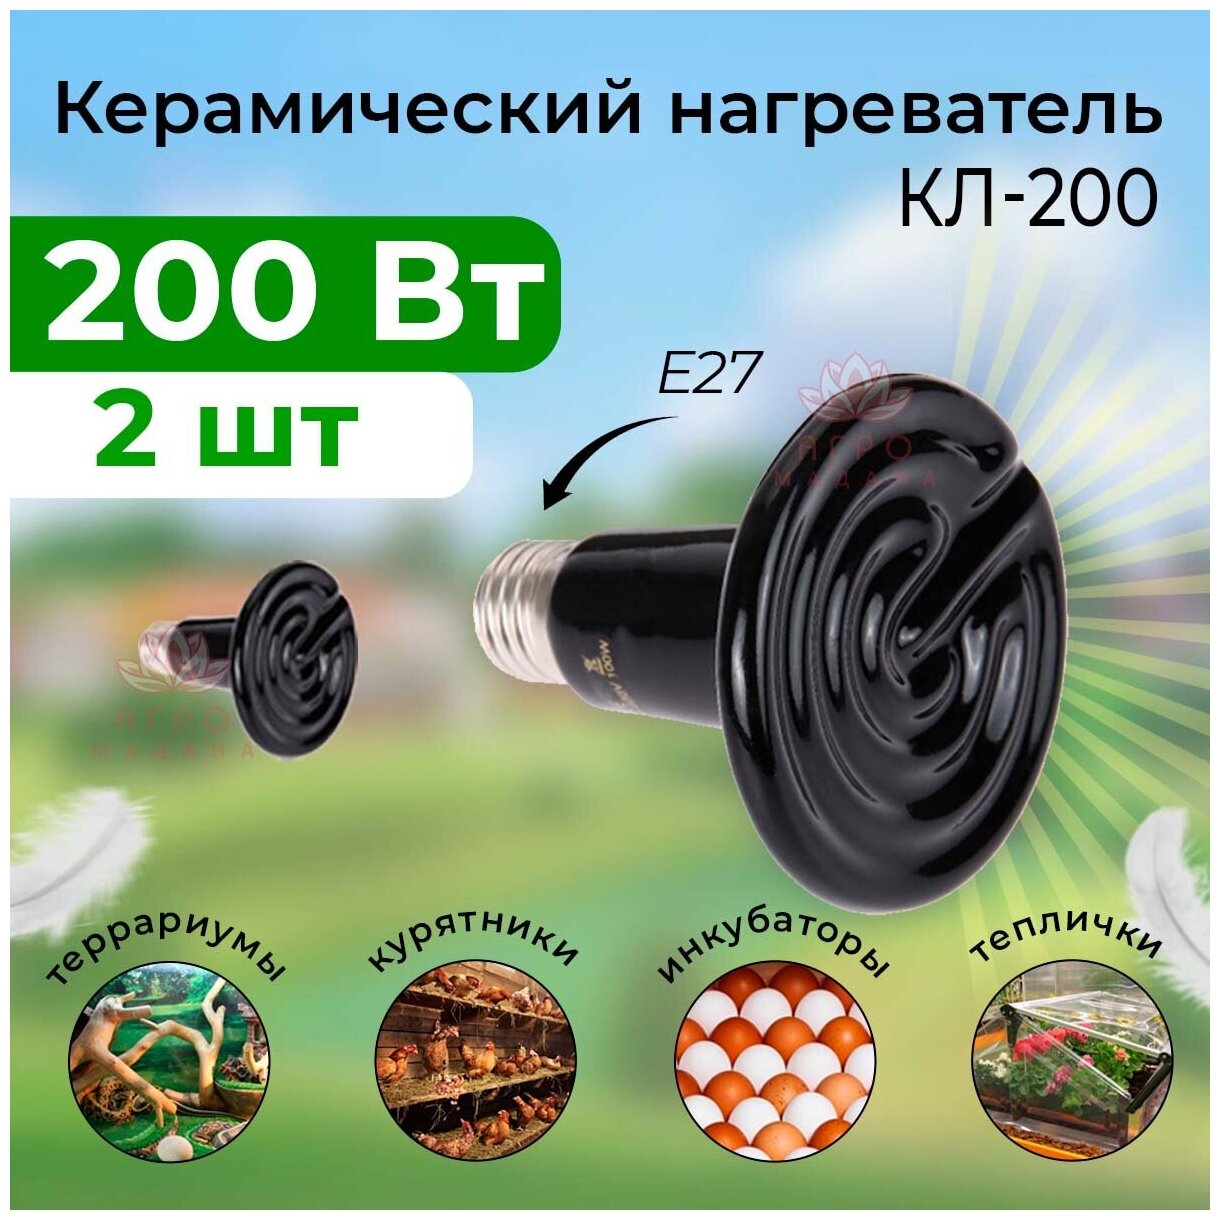 2шт Керамический нагреватель 200 Вт / Керамический нагреватель для брудера, курятника, инкубатора, птичника - фотография № 1